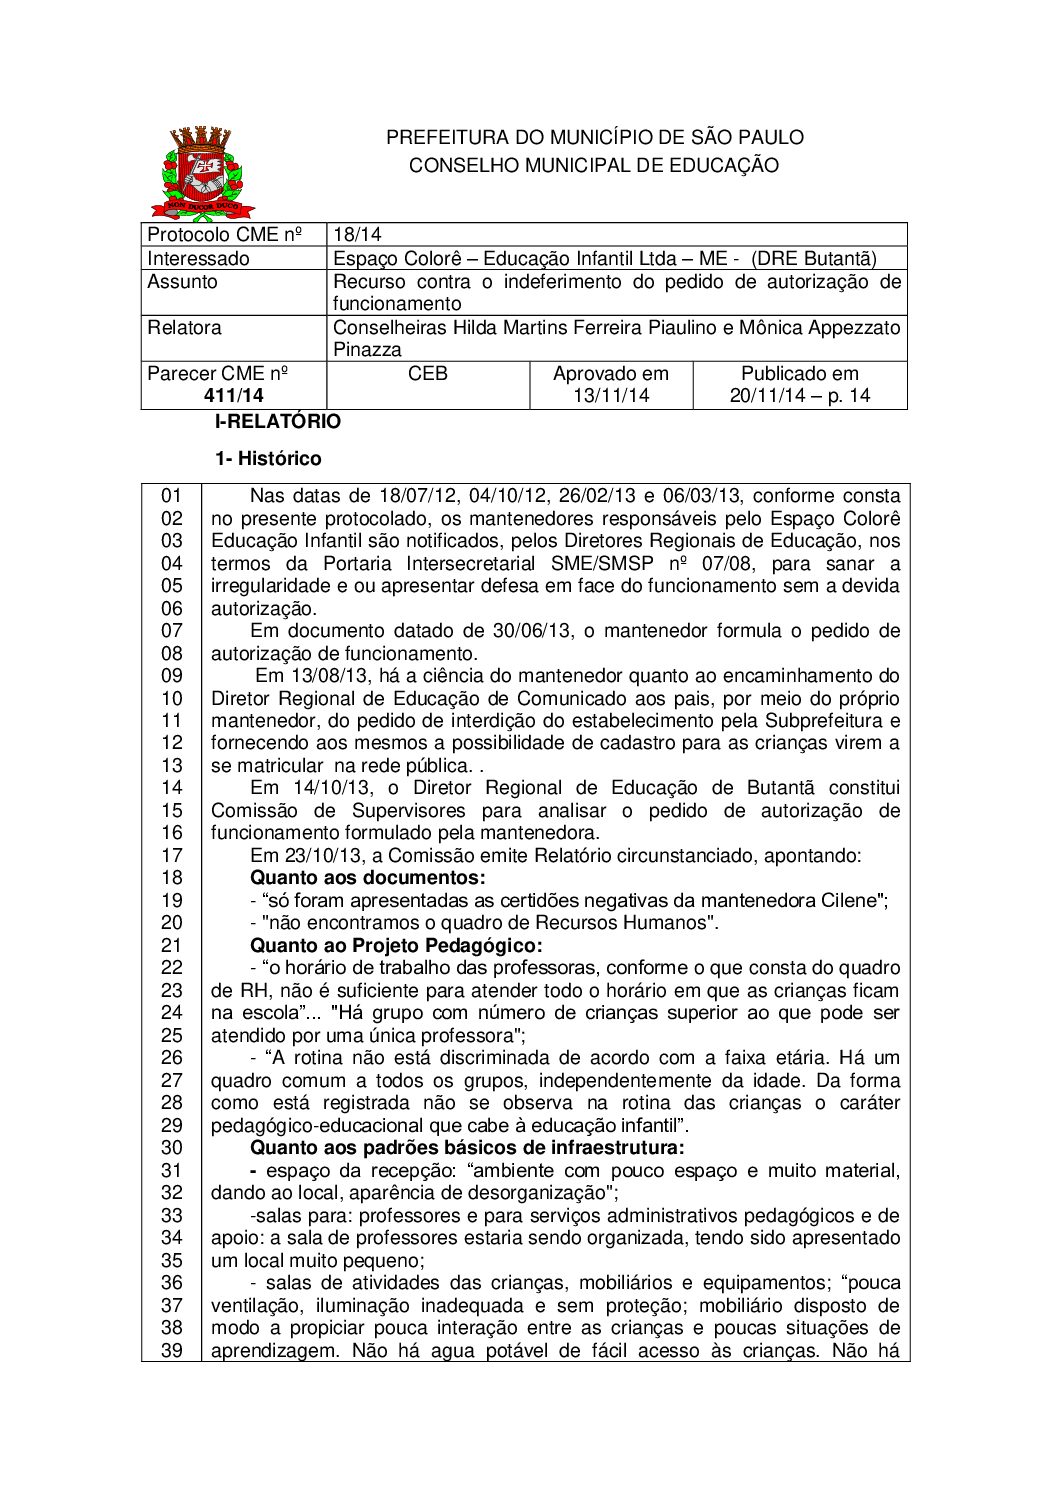 Parecer CME nº 411/2014 - Espaço Colorê Educação Infantil Ltda ME (DRE Butantã) - Recurso contra o indeferimento do pedido de autorização de funcionamento 